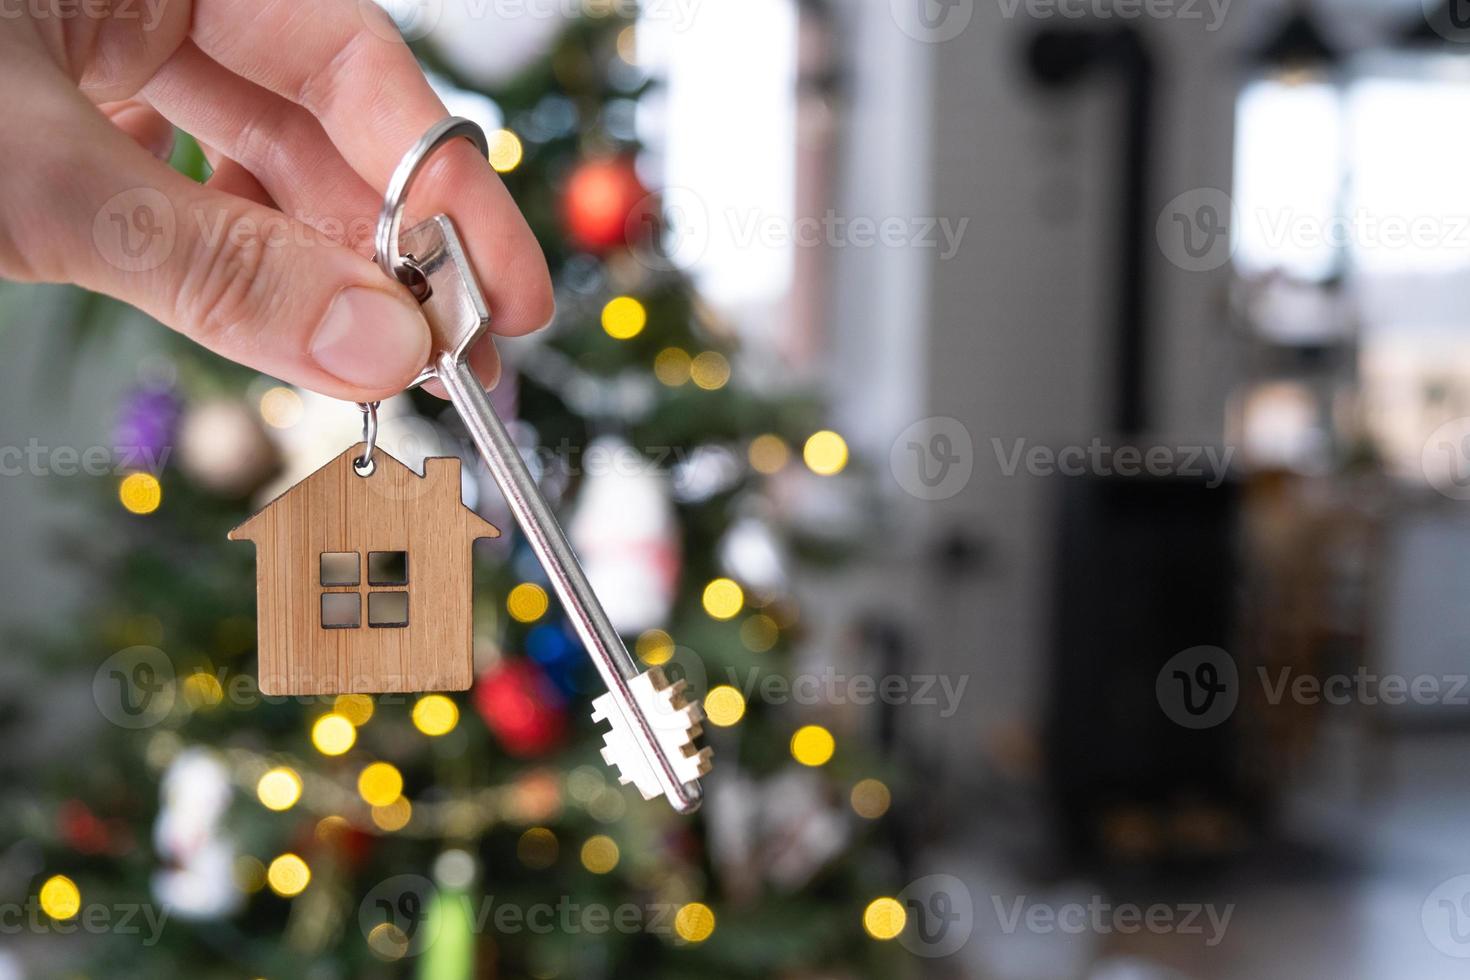 nyckel till de hus i hand på bakgrund av jul träd. gåva för ny år, jul. byggnad, design, projekt, rör på sig till ny hus, inteckning, hyra och inköp verklig egendom. kopia Plats foto